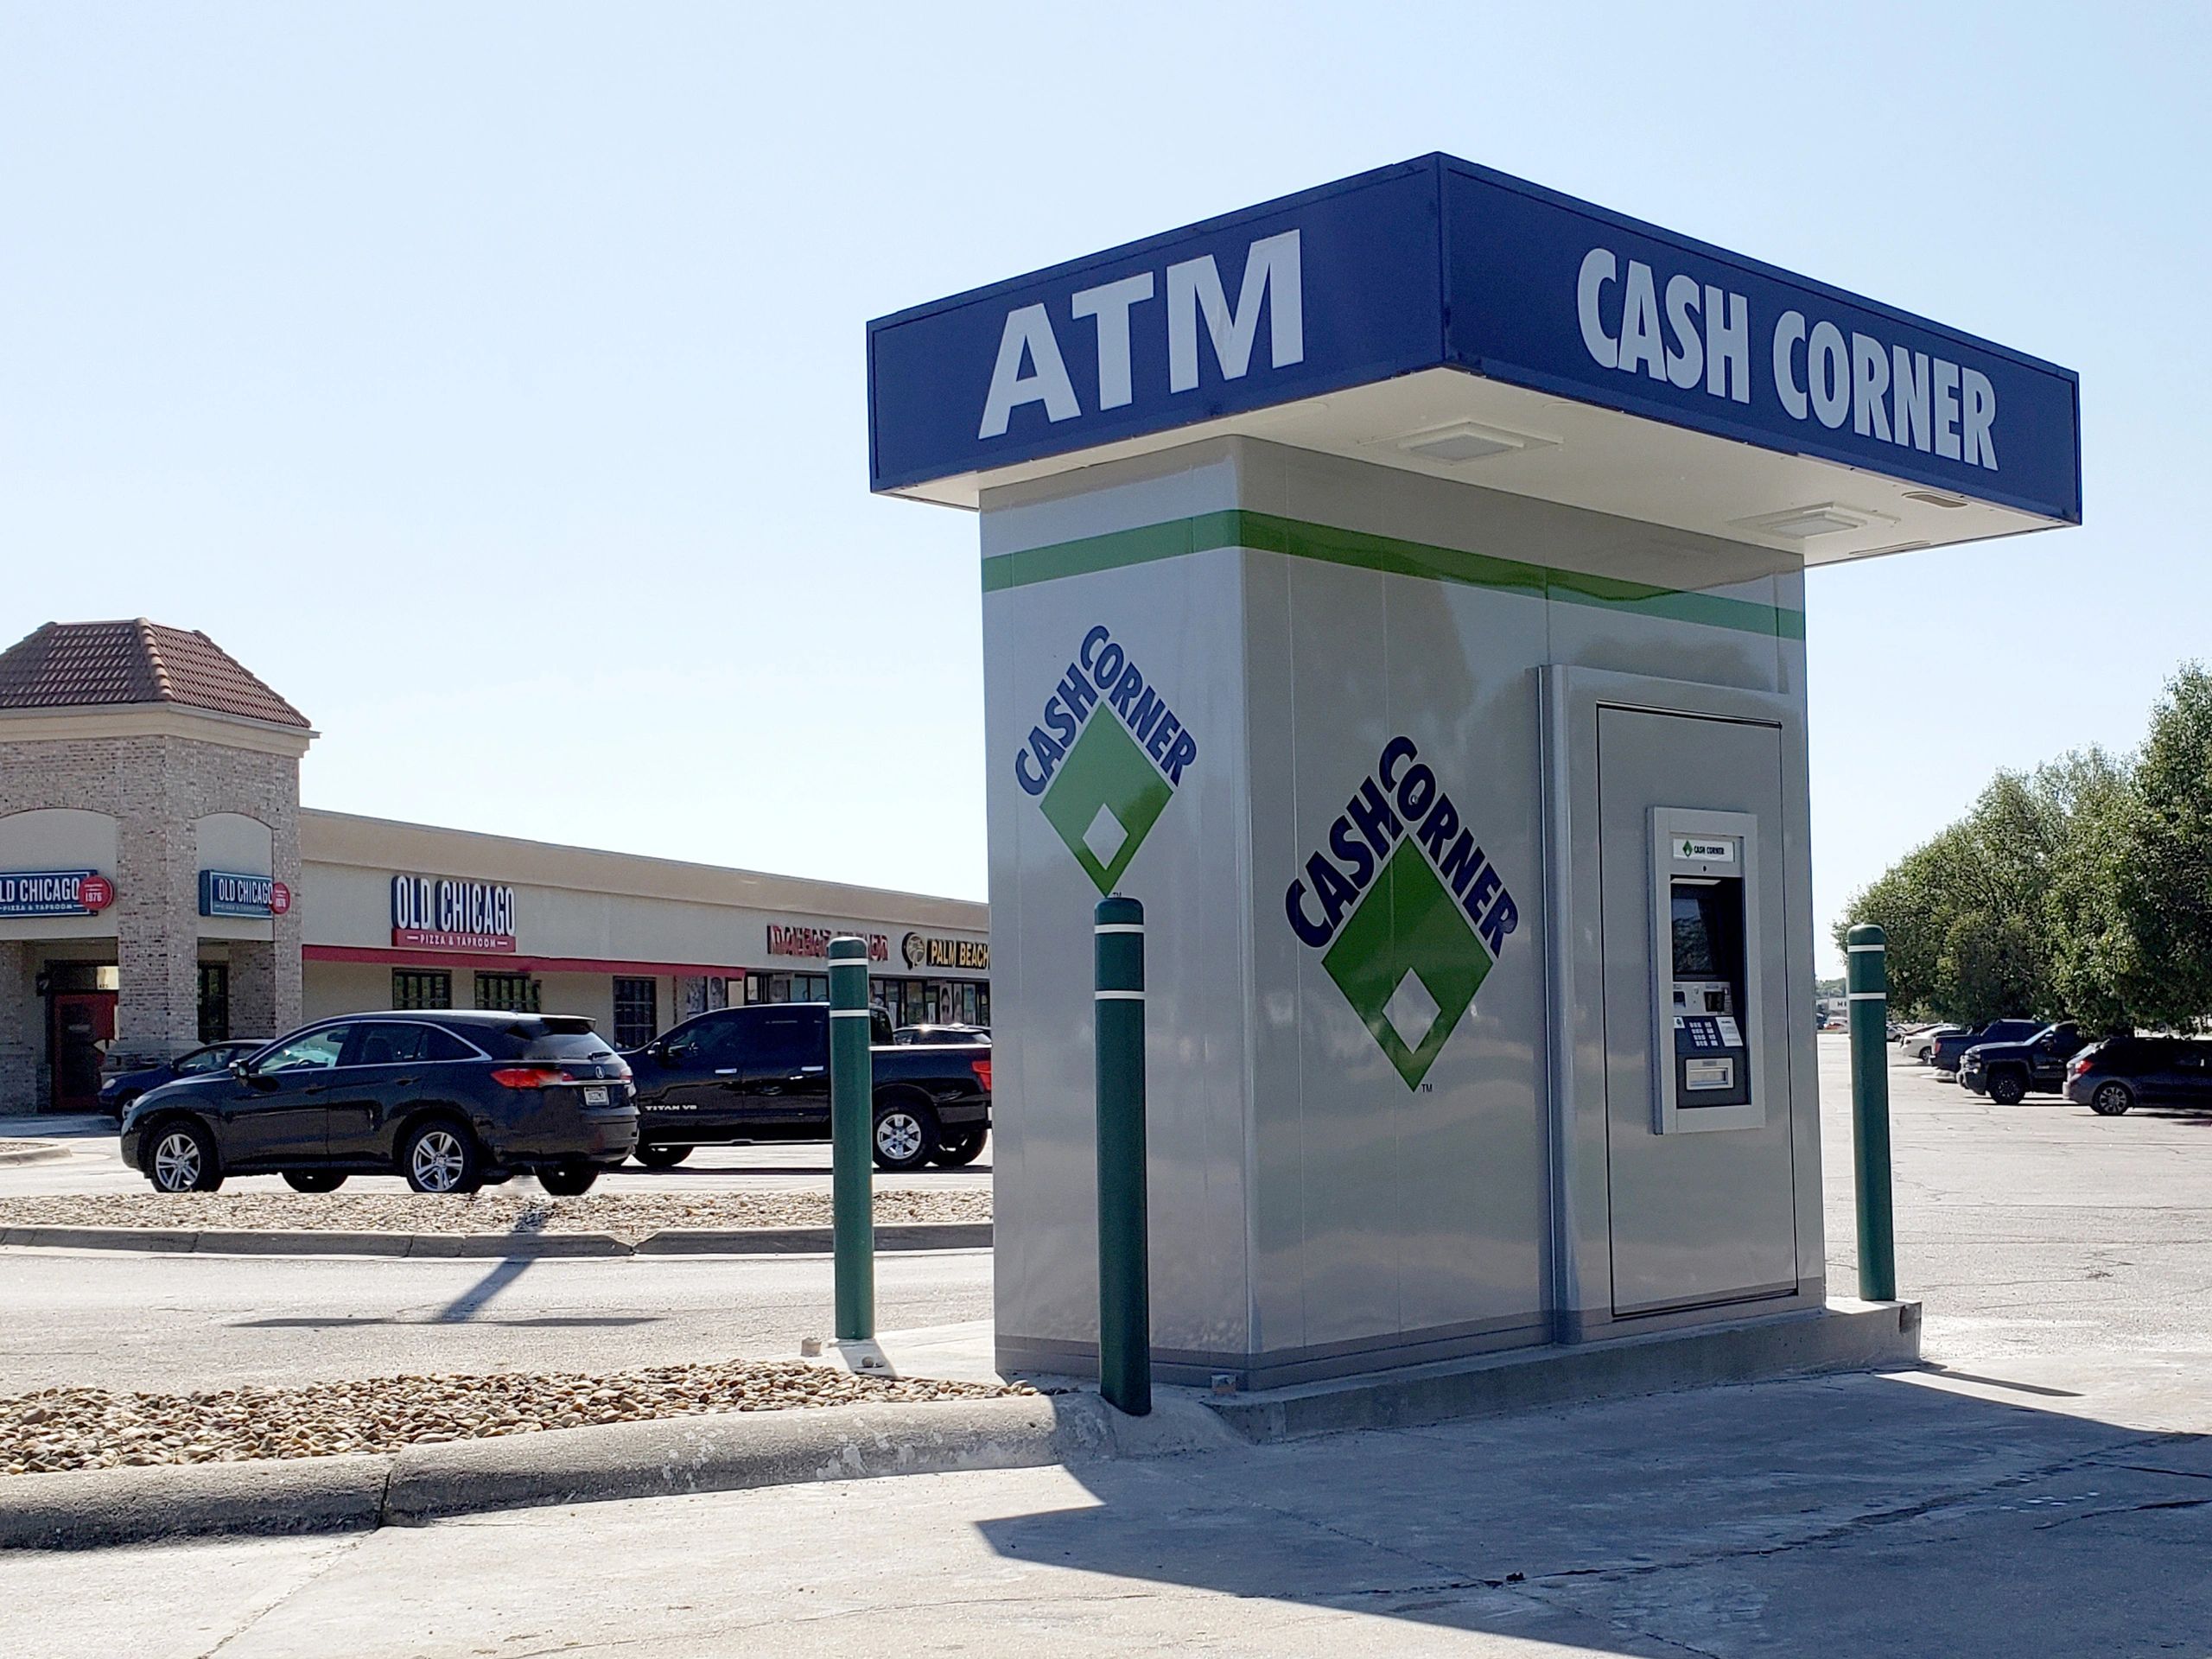 Cash Corner Atm